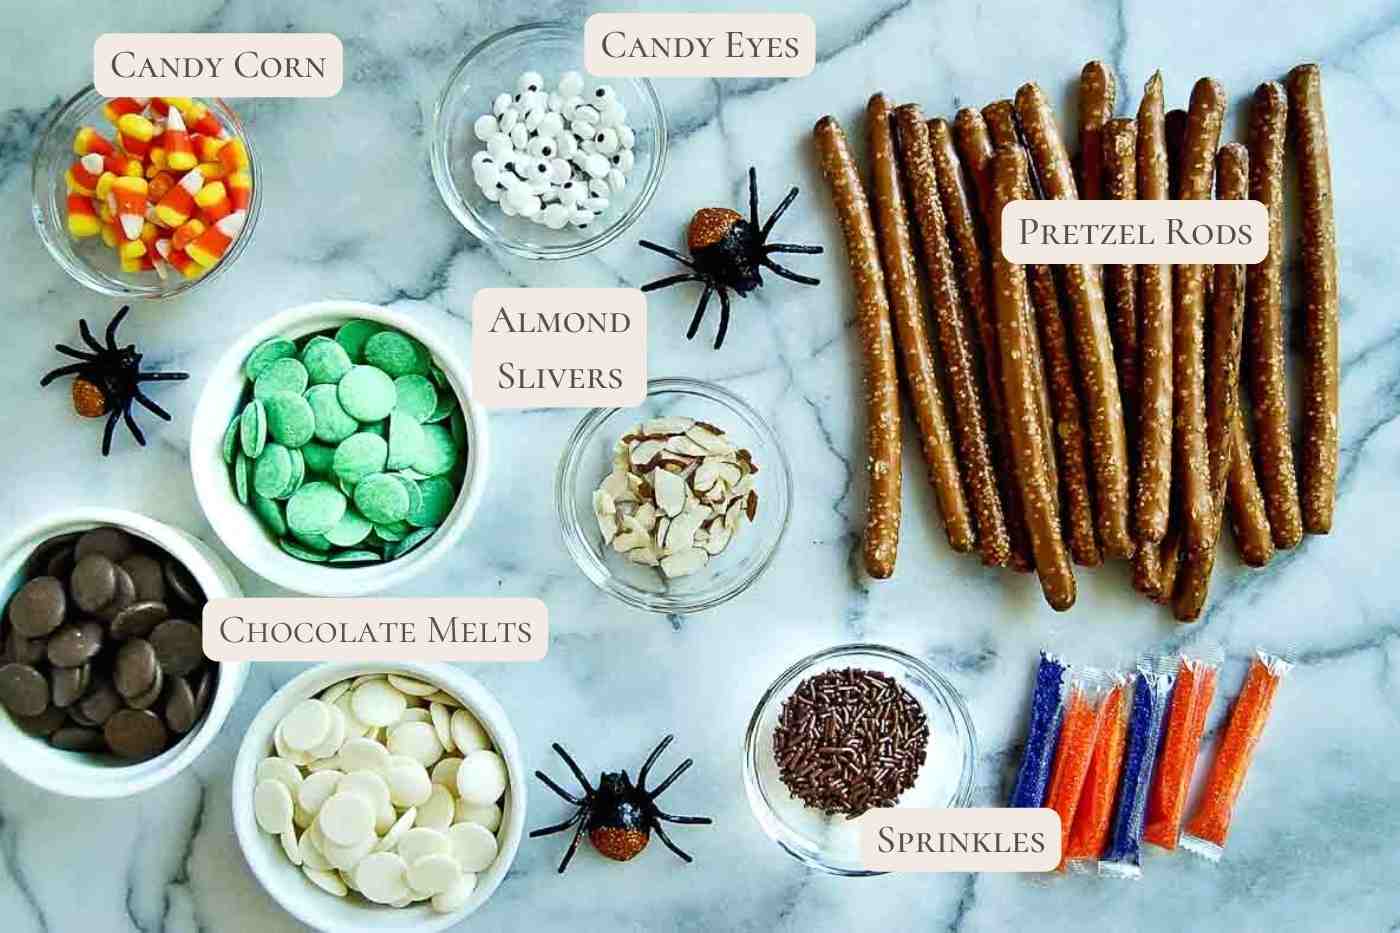 ingredients for halloween pretzel rods on countertop.